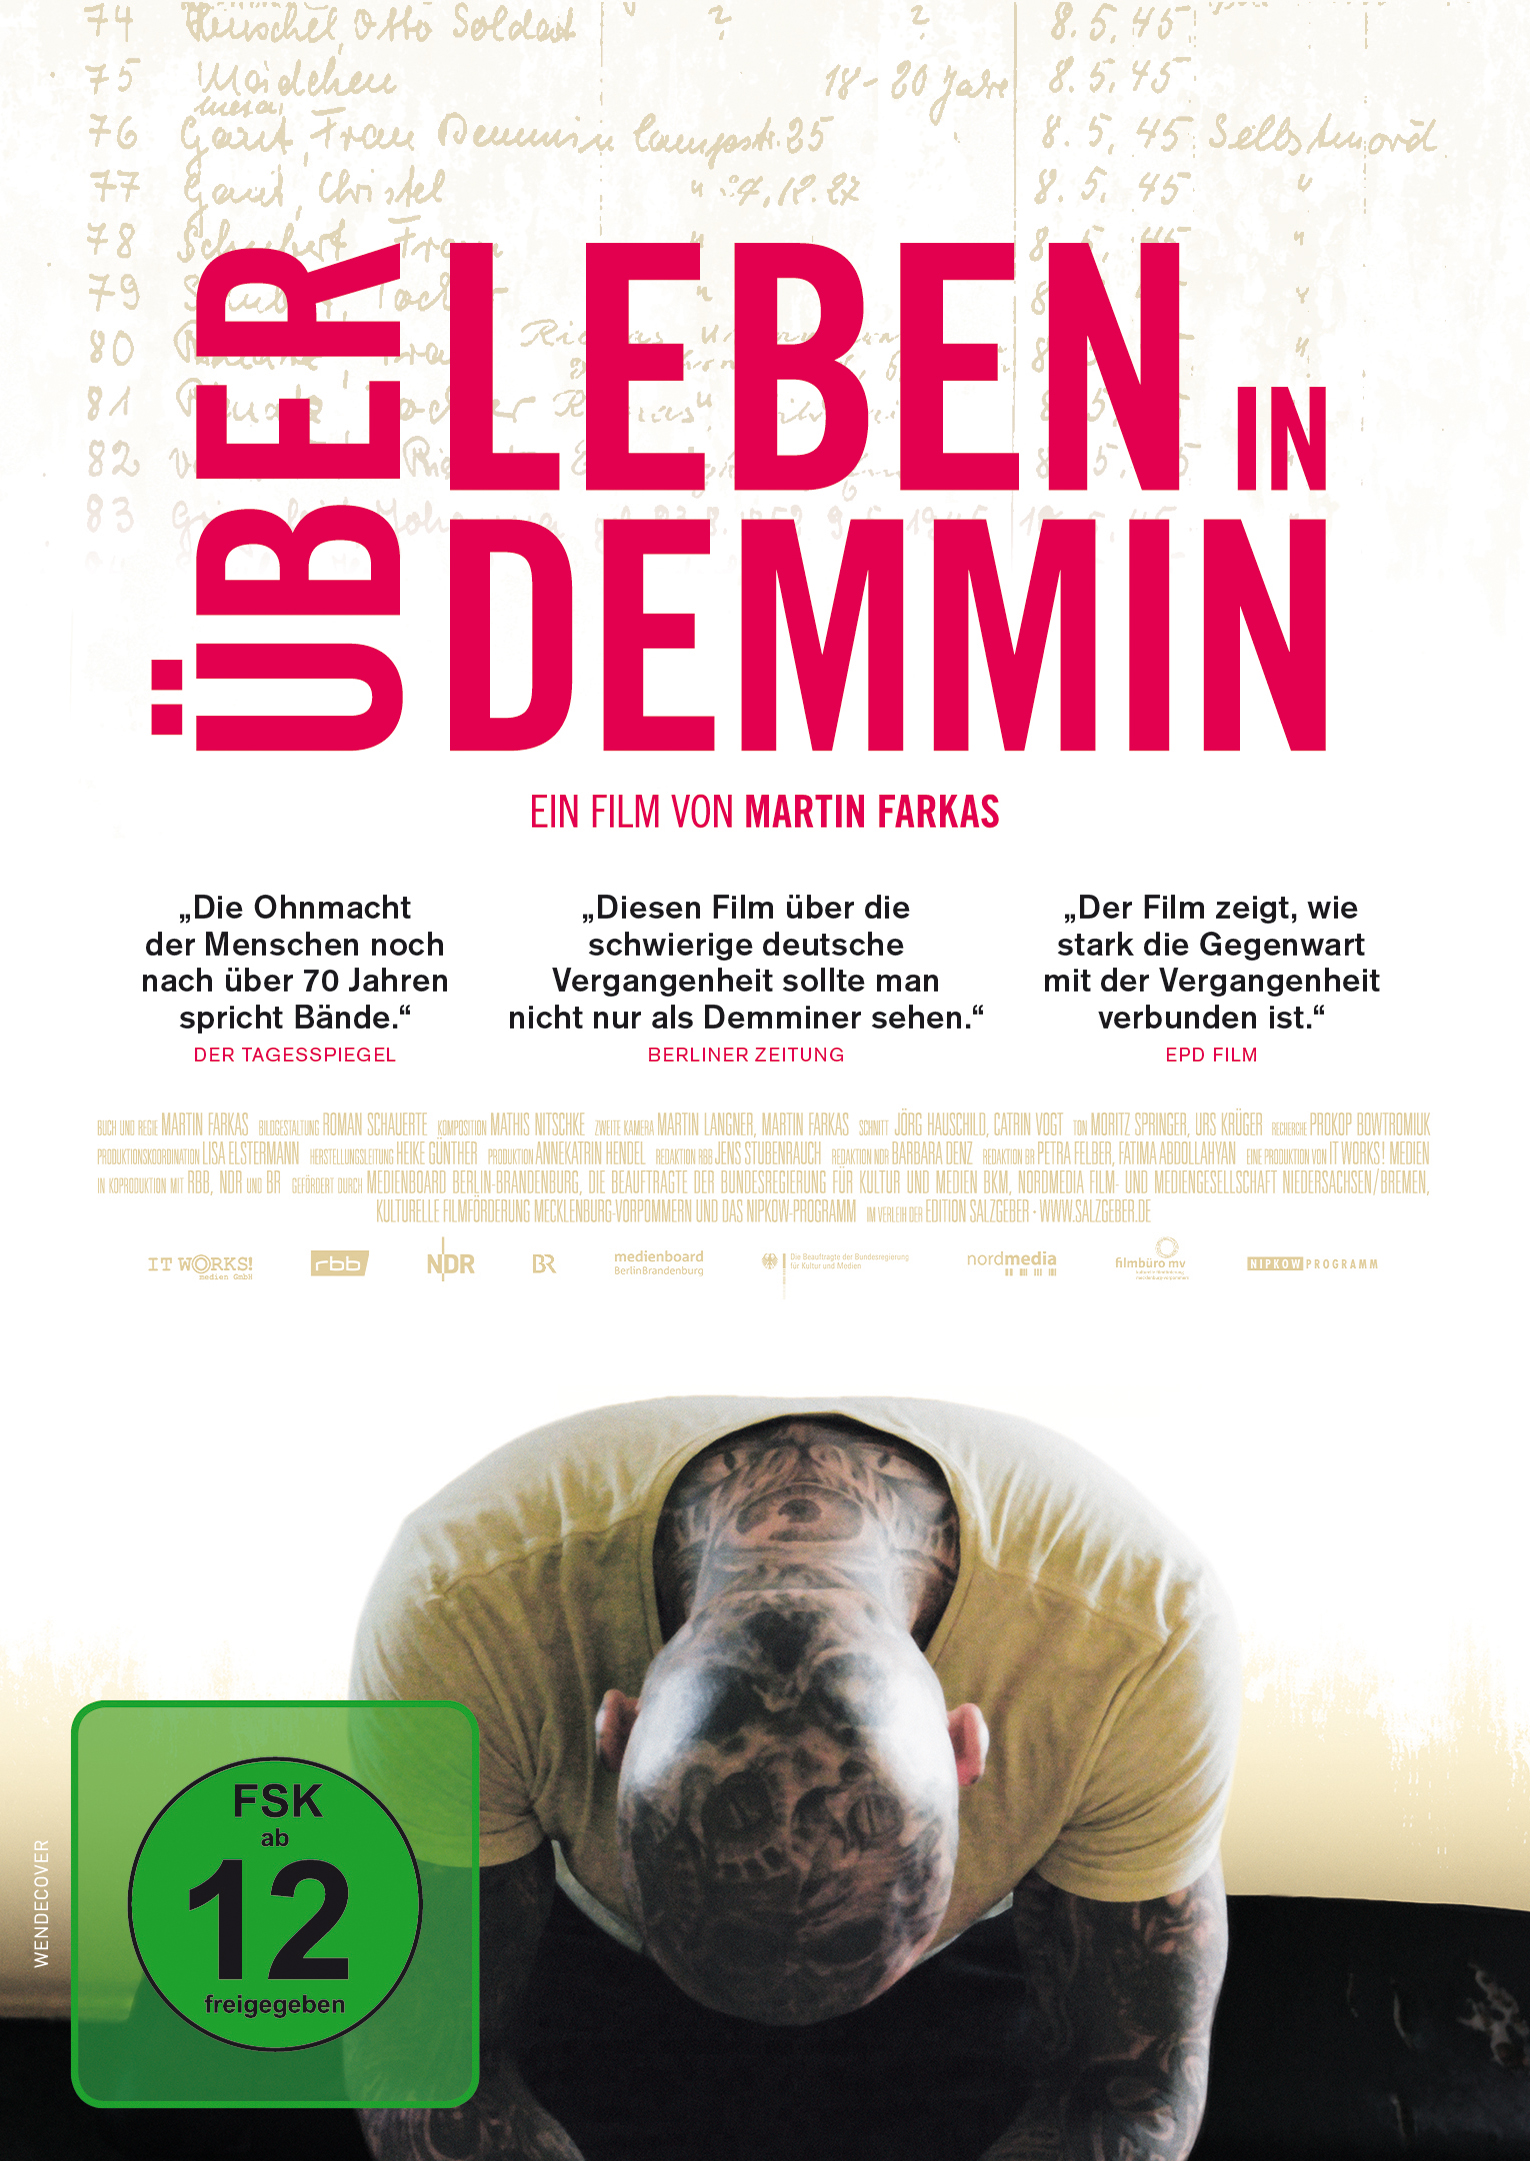 Über Leben DVD in Demmin